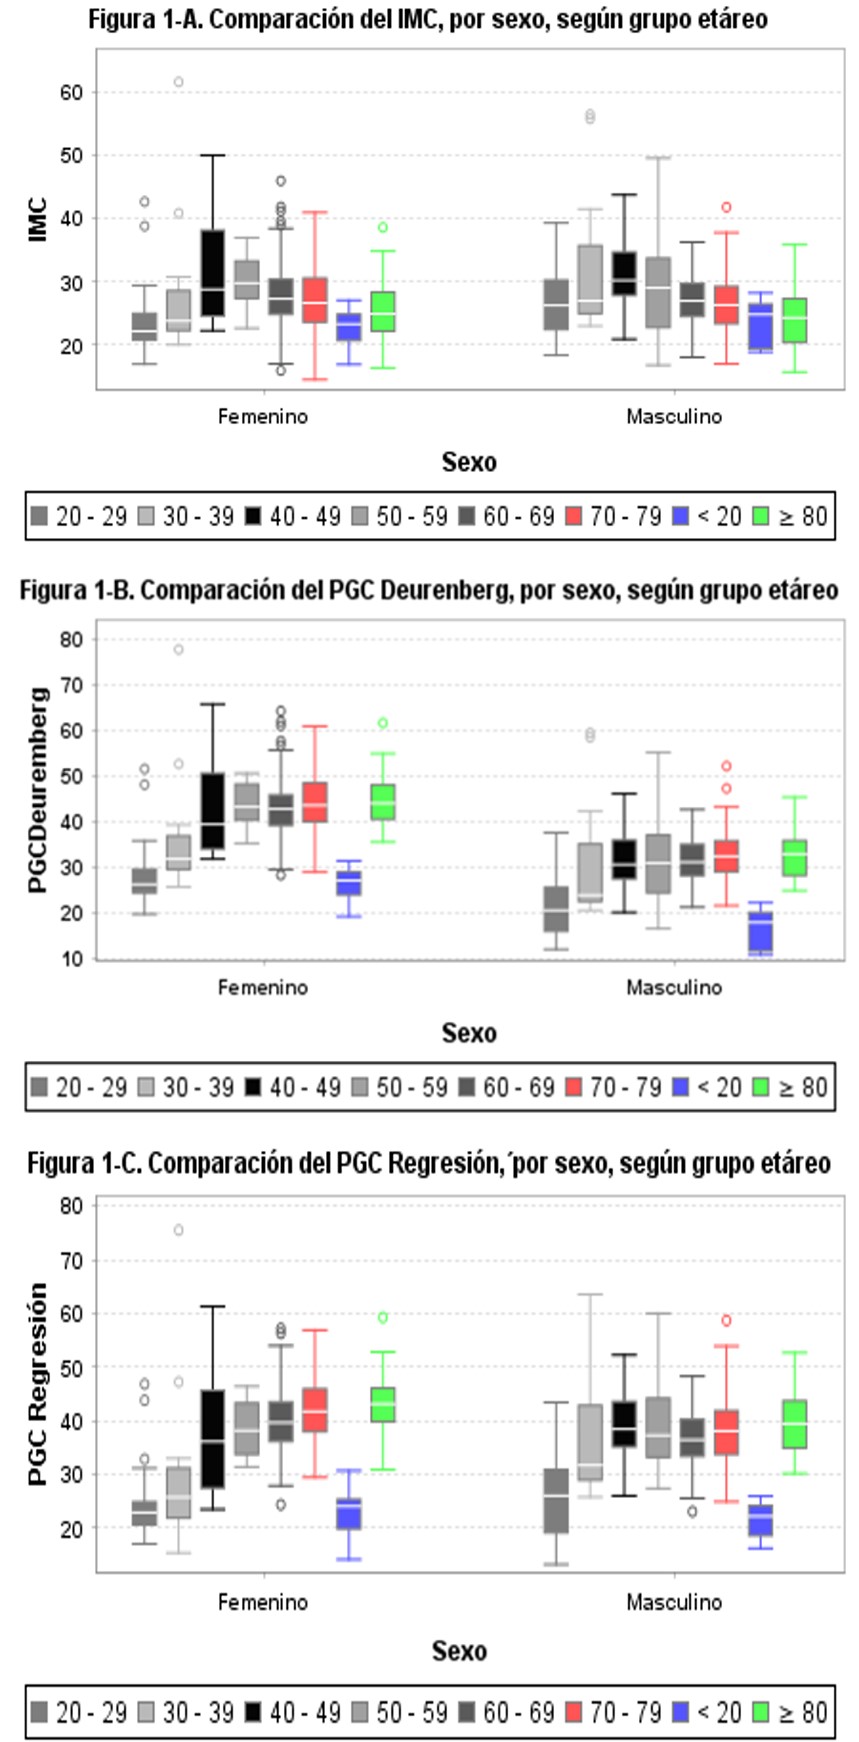 Comparación del IMC, PGCD y PGCR, por sexo, según grupo etáreo